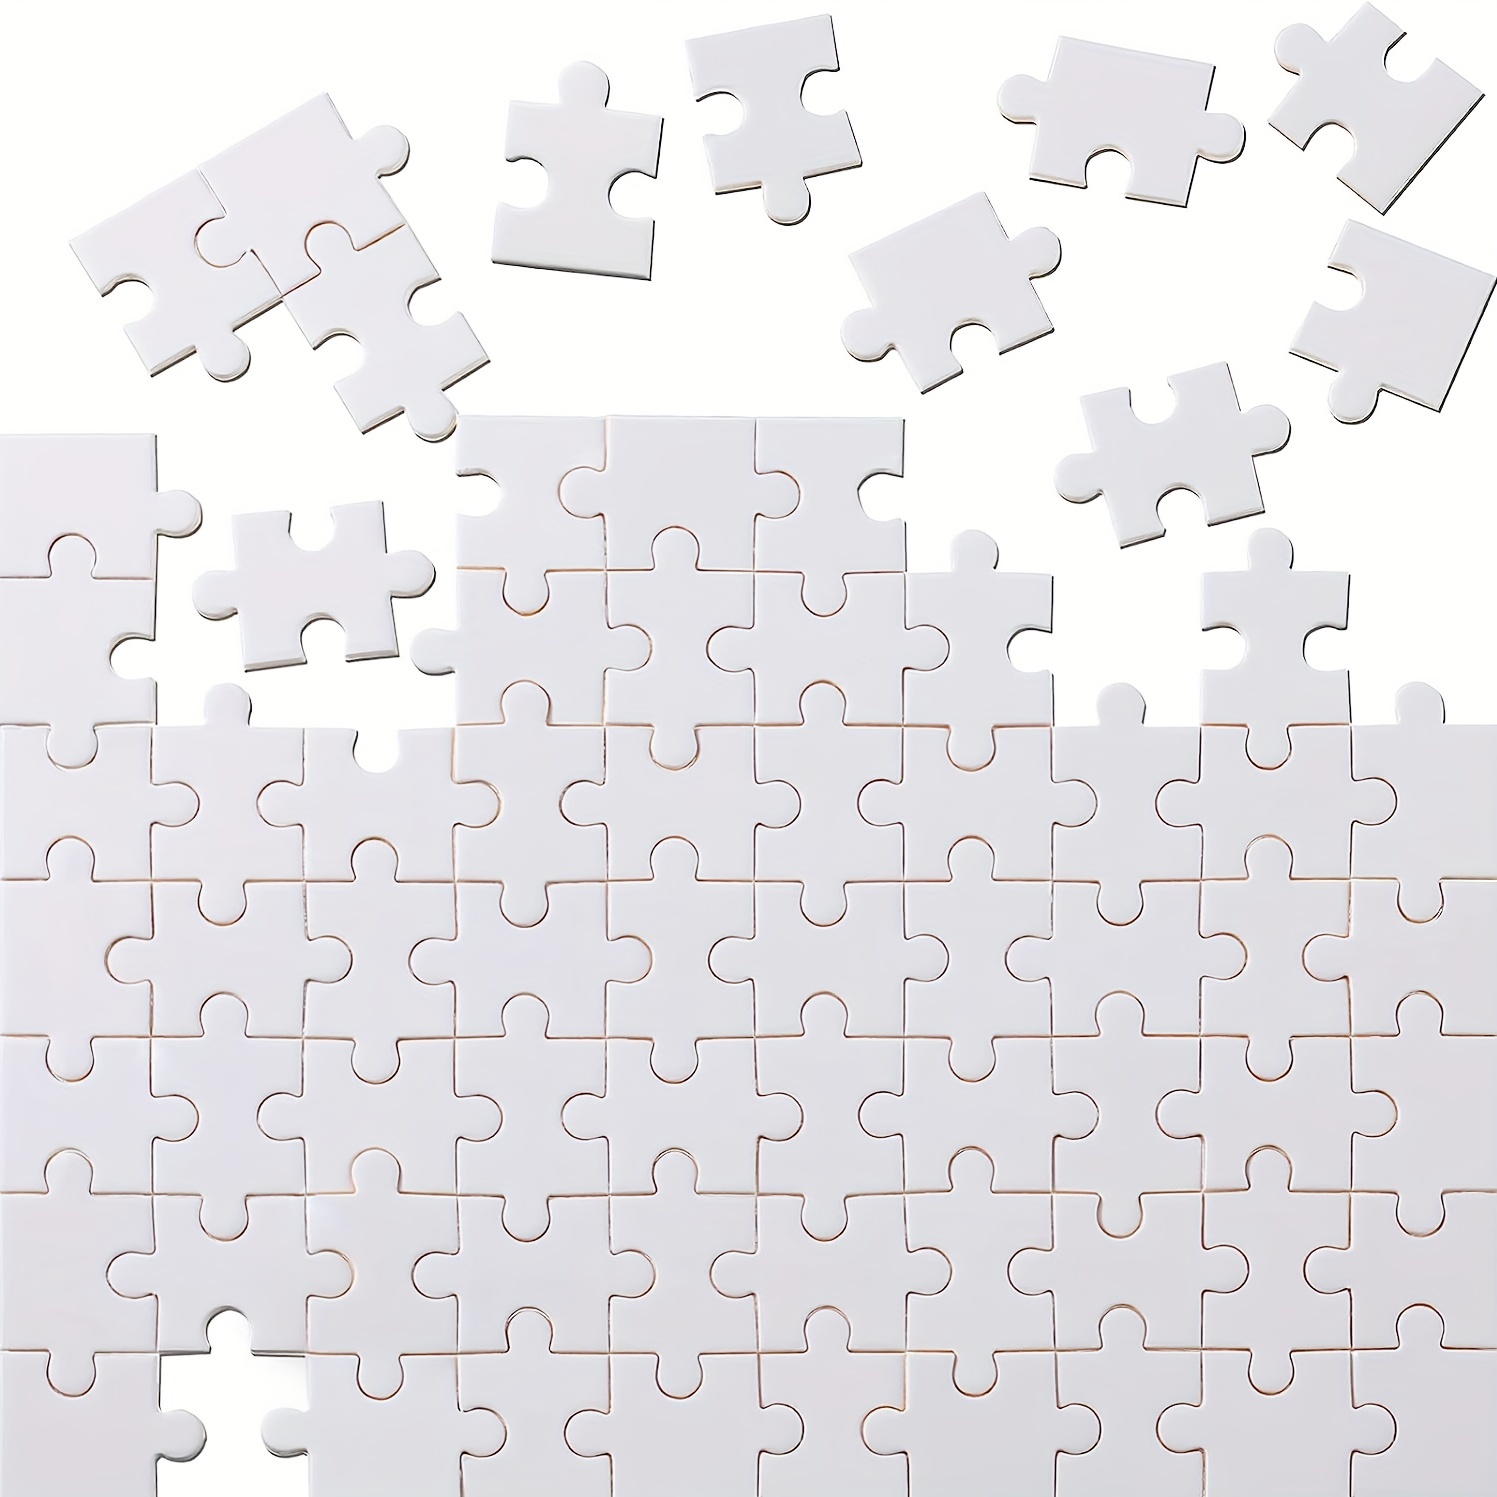 Puzzle blanc 12 pièces